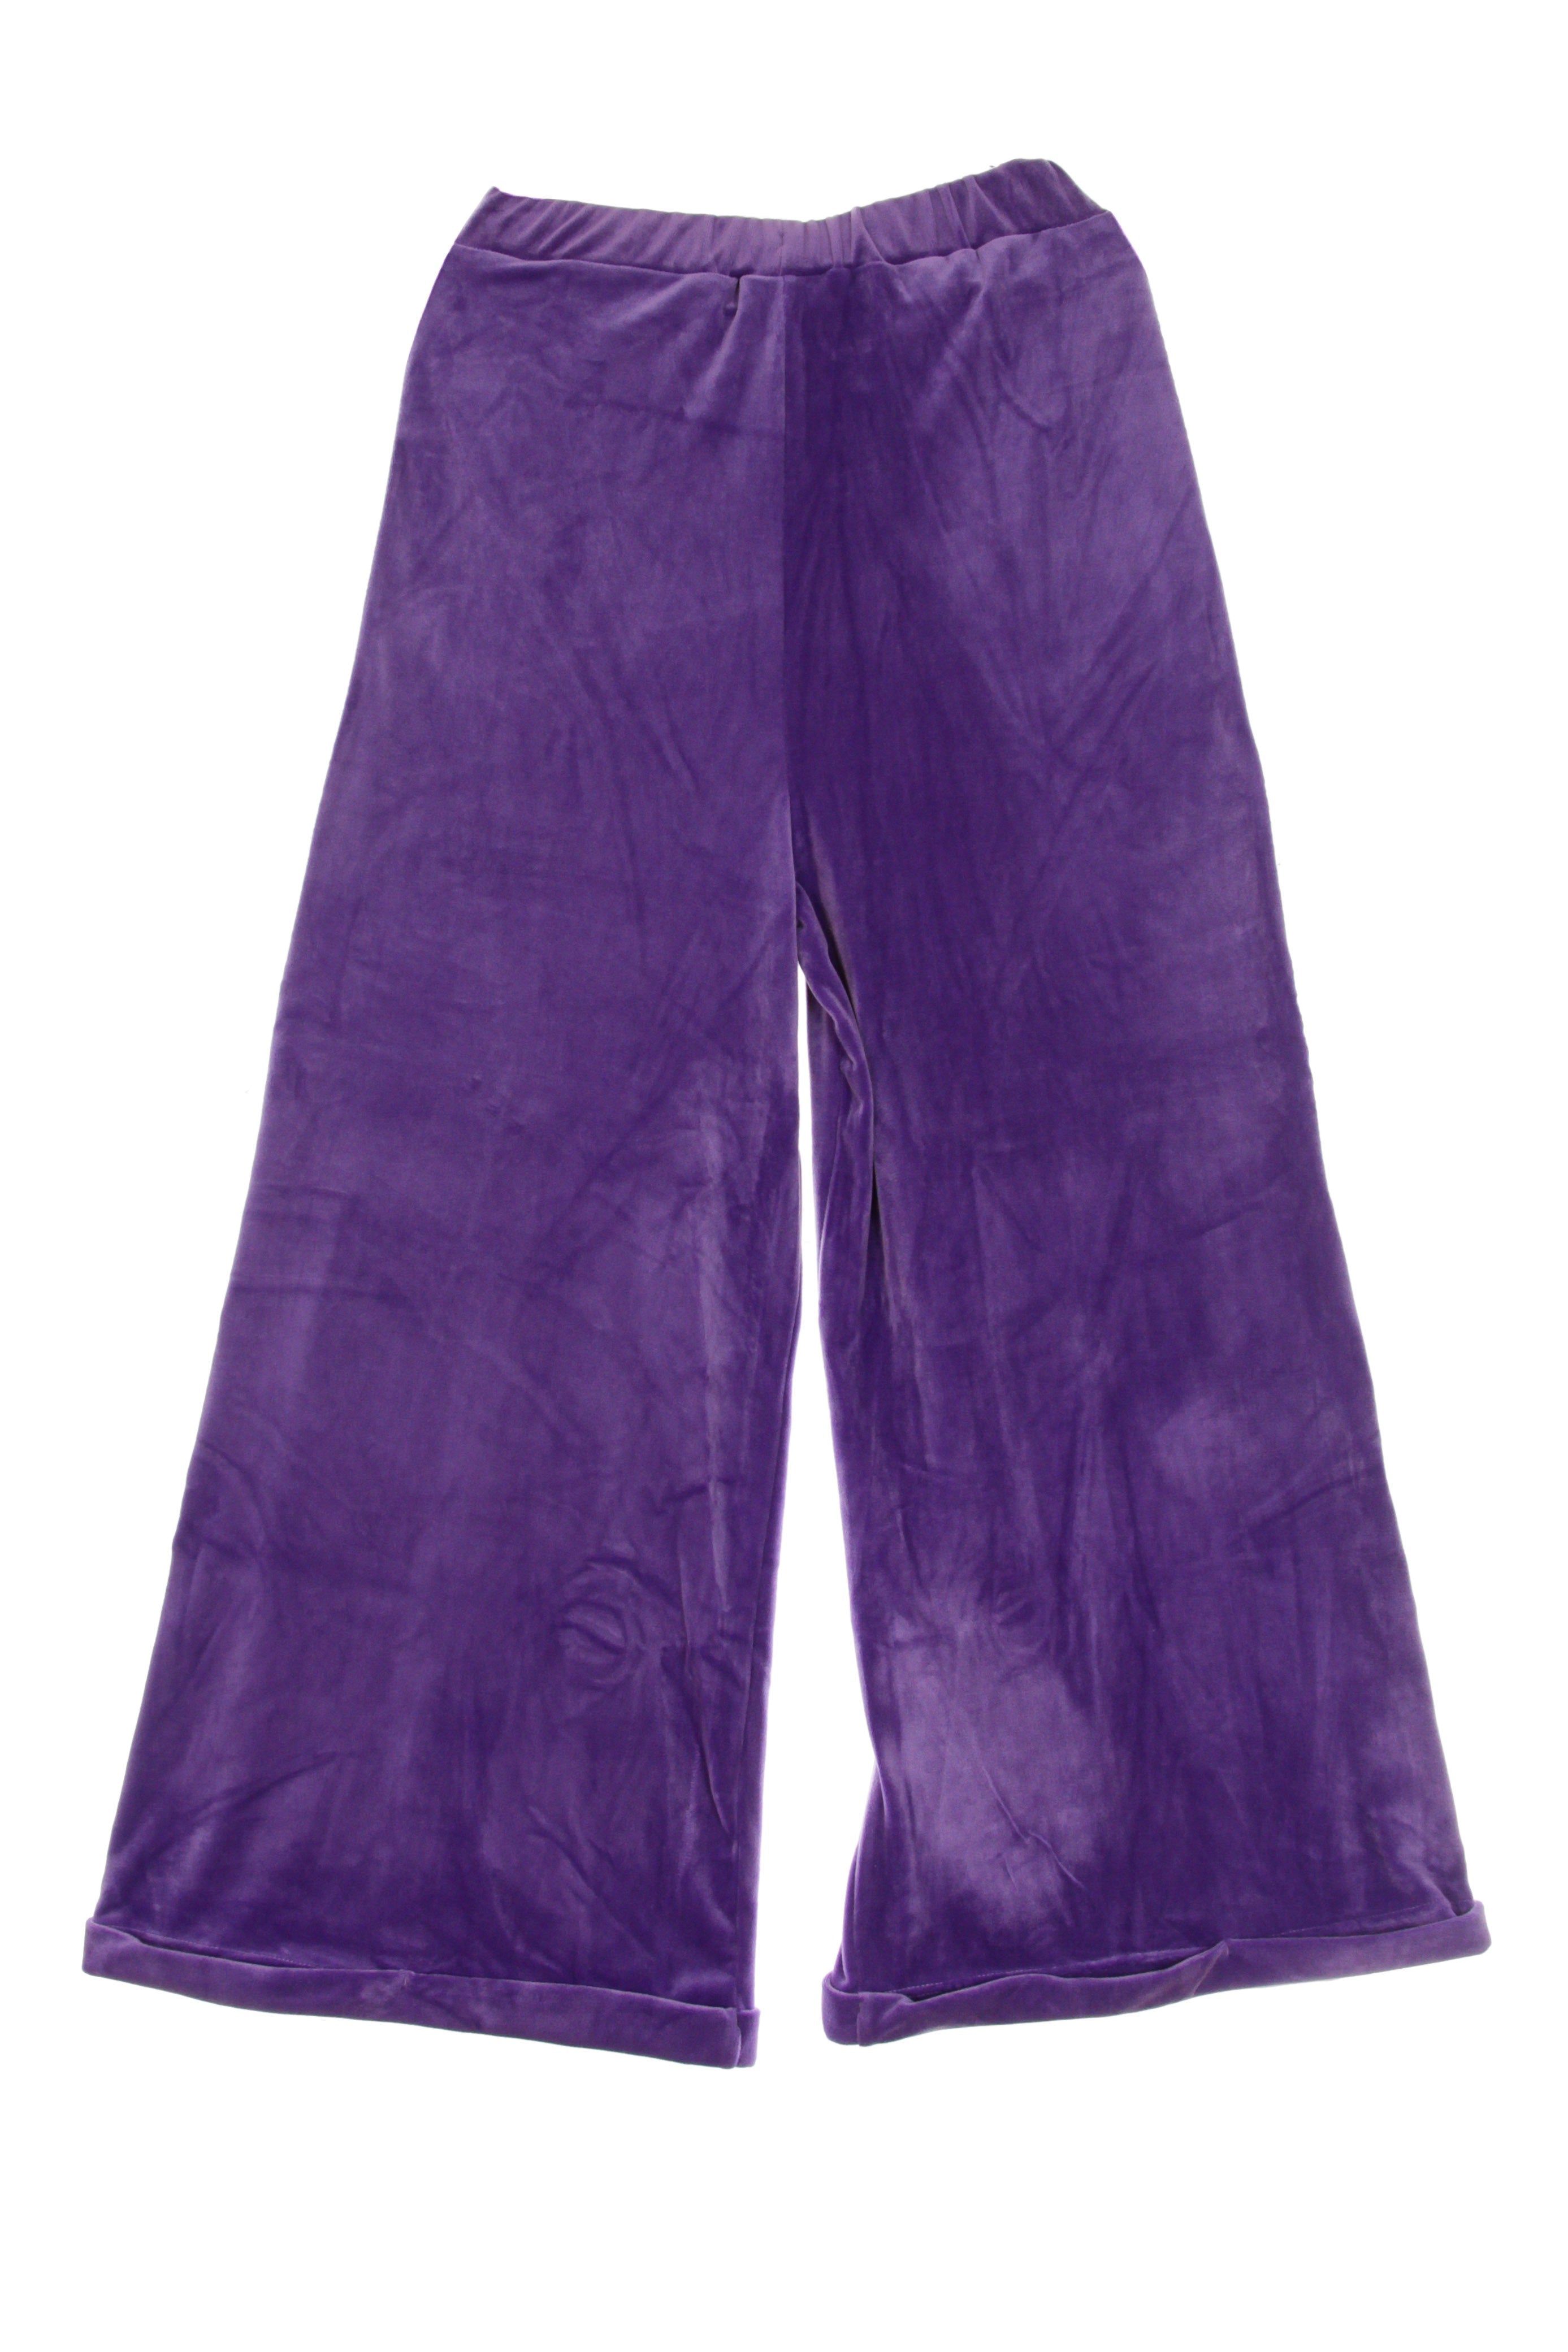 Authentic La Dazar Women's Lightweight Tracksuit Pants Violet/black